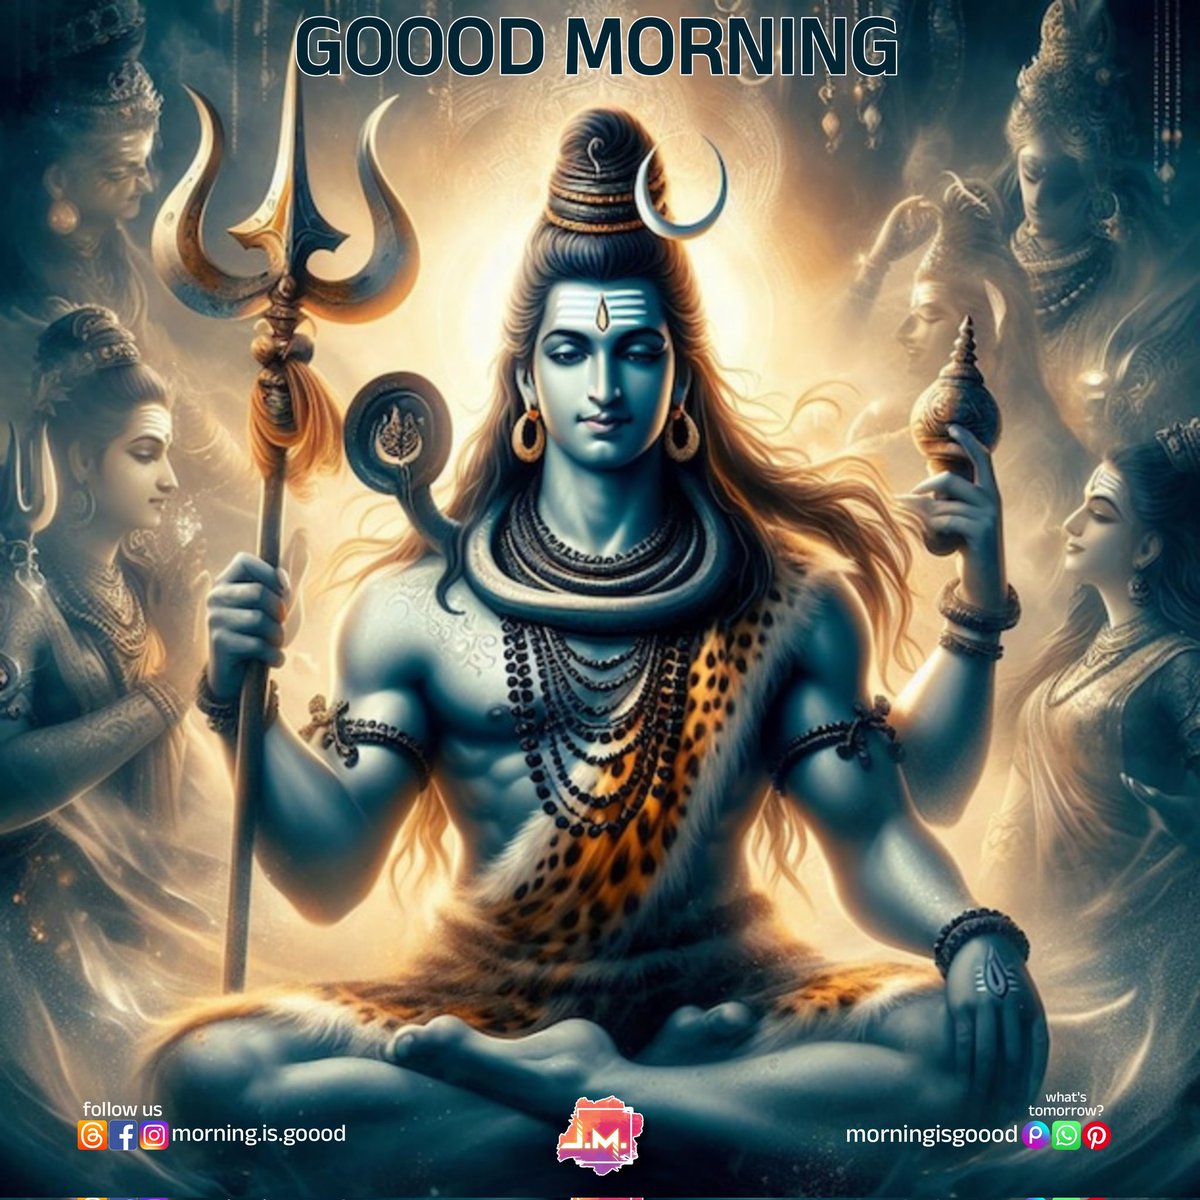 #hanuman #hindu #mahadev #ram #shiva #hinduism #india #hanumanji #krishna #harharmahadev #bajrangbali #jaishreeram #god #hanumanchalisa #mahakal #jaihanuman #lordhanuman #jaishriram #shiv #omnamahshivaya #ramayana #hanumanjayanti #ganesha #hanuman #goodmorning #jayesha_mangukiya